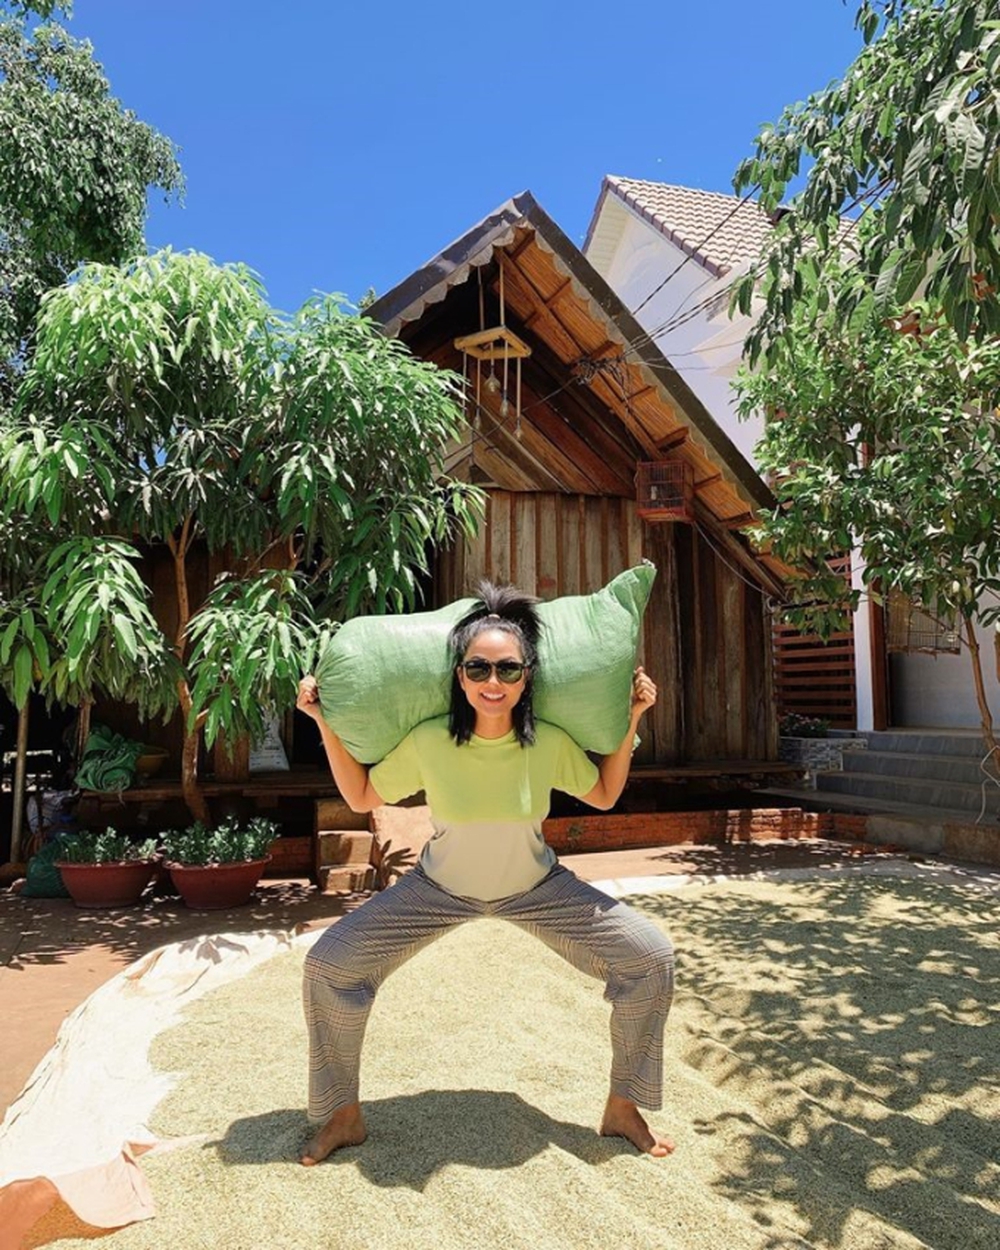 Khu vườn nhà H’Hen Niê hút gần 10 triệu lượt xem: Rau xanh trái ngọt sum suê, netizen tấm tắc “đỡ tốn tiền đi chợ” - Ảnh 3.